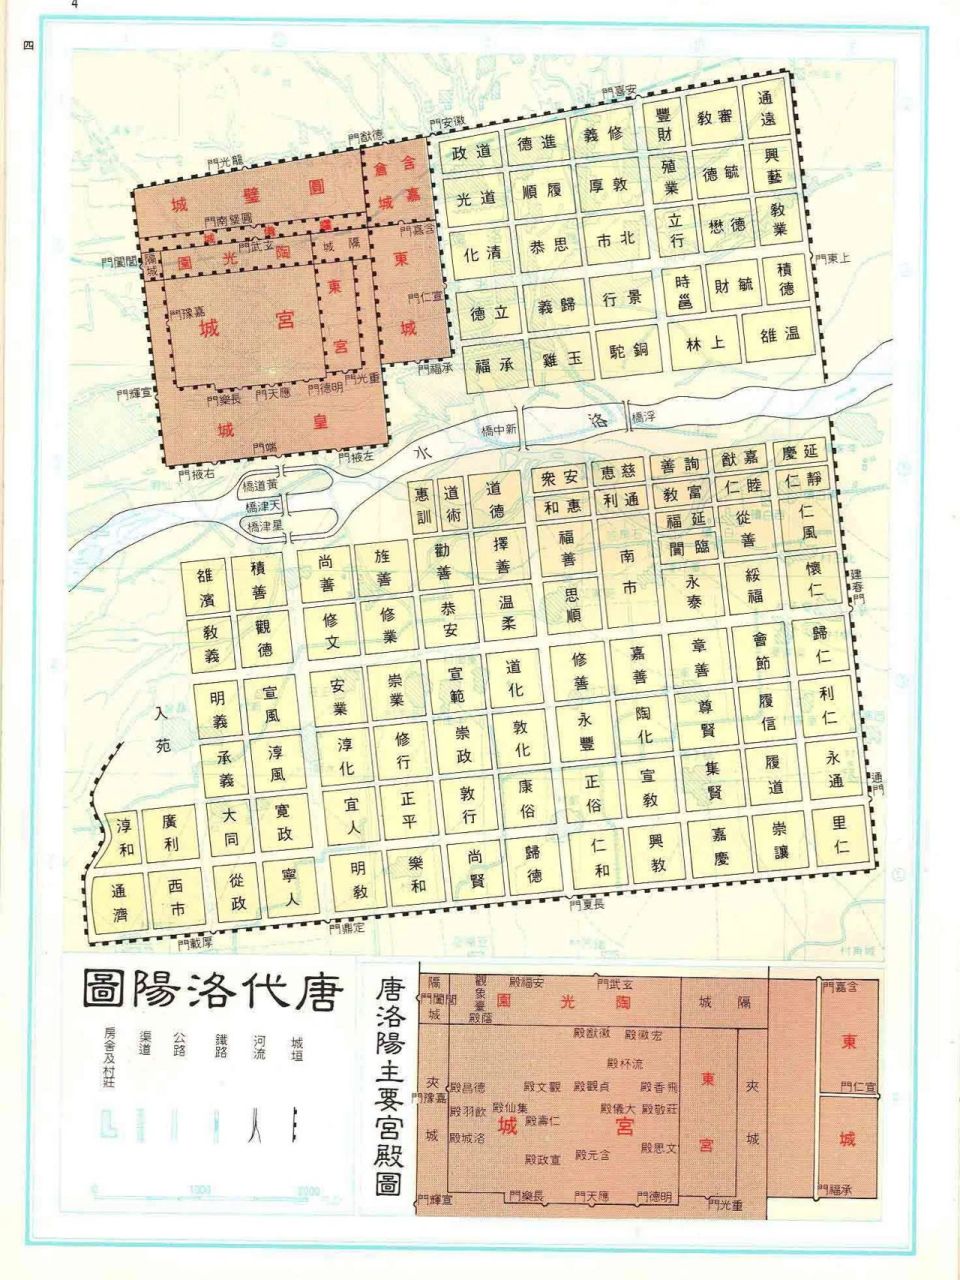 唐朝地图 洛阳城图片